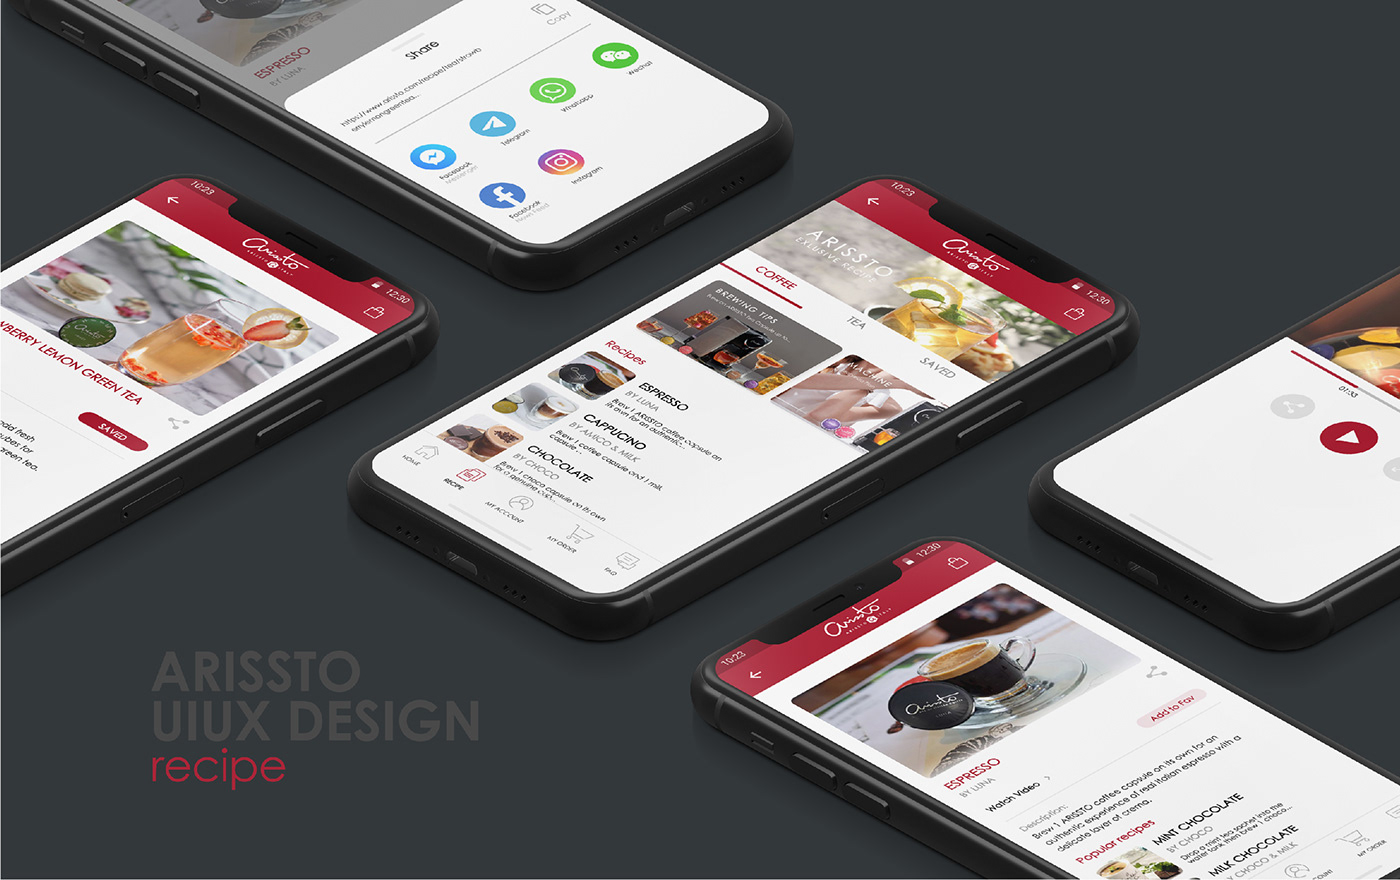 app bakery app cafe coffee app Mobile Application Tea App uiux user interface Web Design  Website